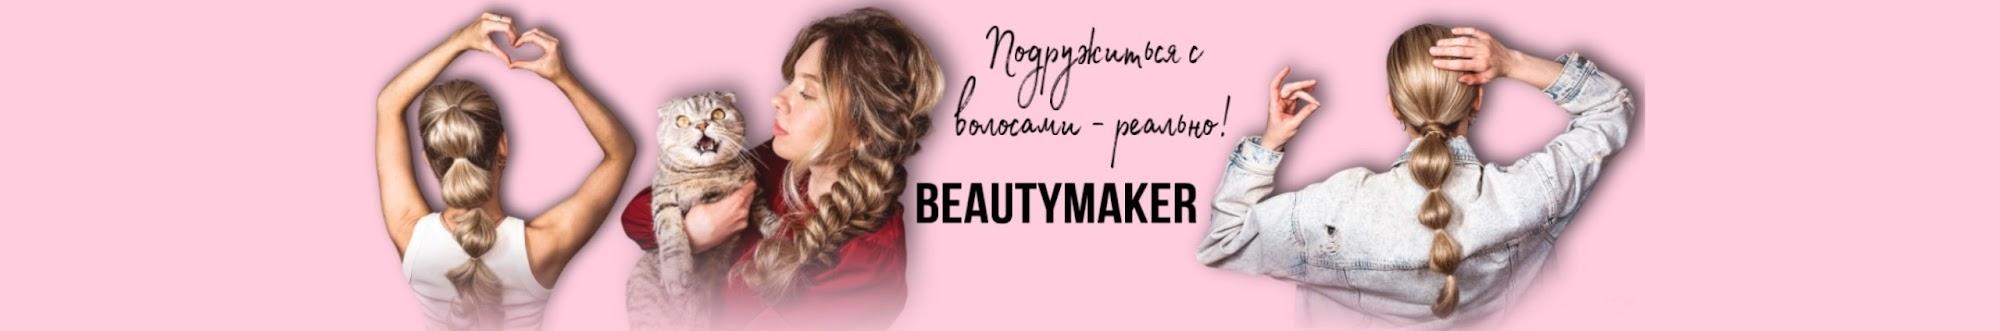 Beautymaker